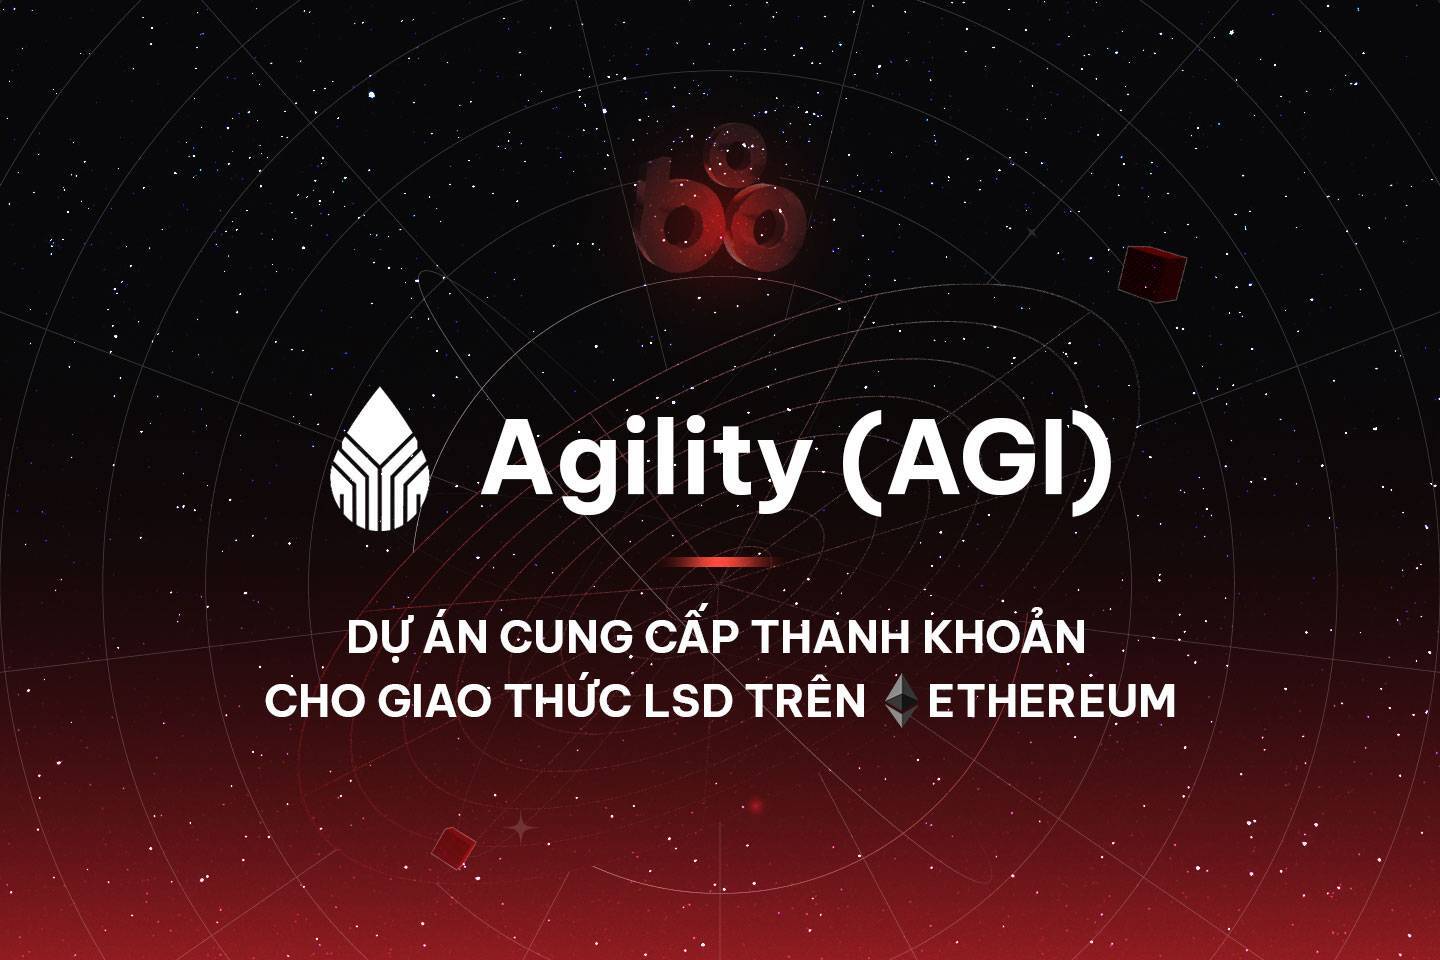 Agility agi - Dự Án Cung Cấp Thanh Khoản Cho Giao Thức Lsd Trên Ethereum